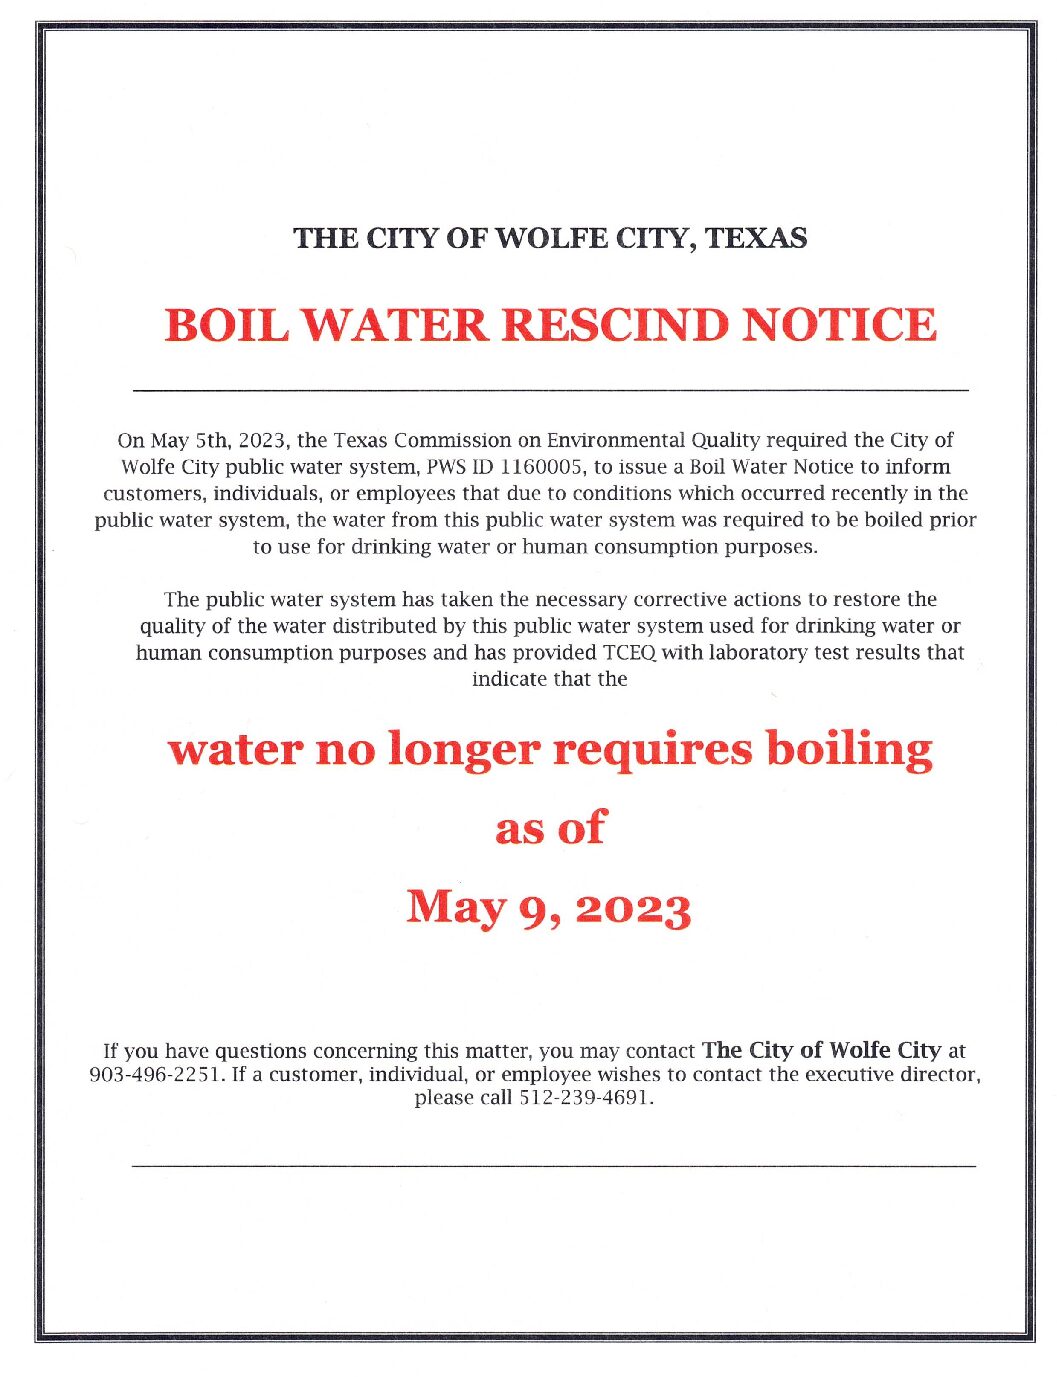 Boil Water Rescind 5.9.23